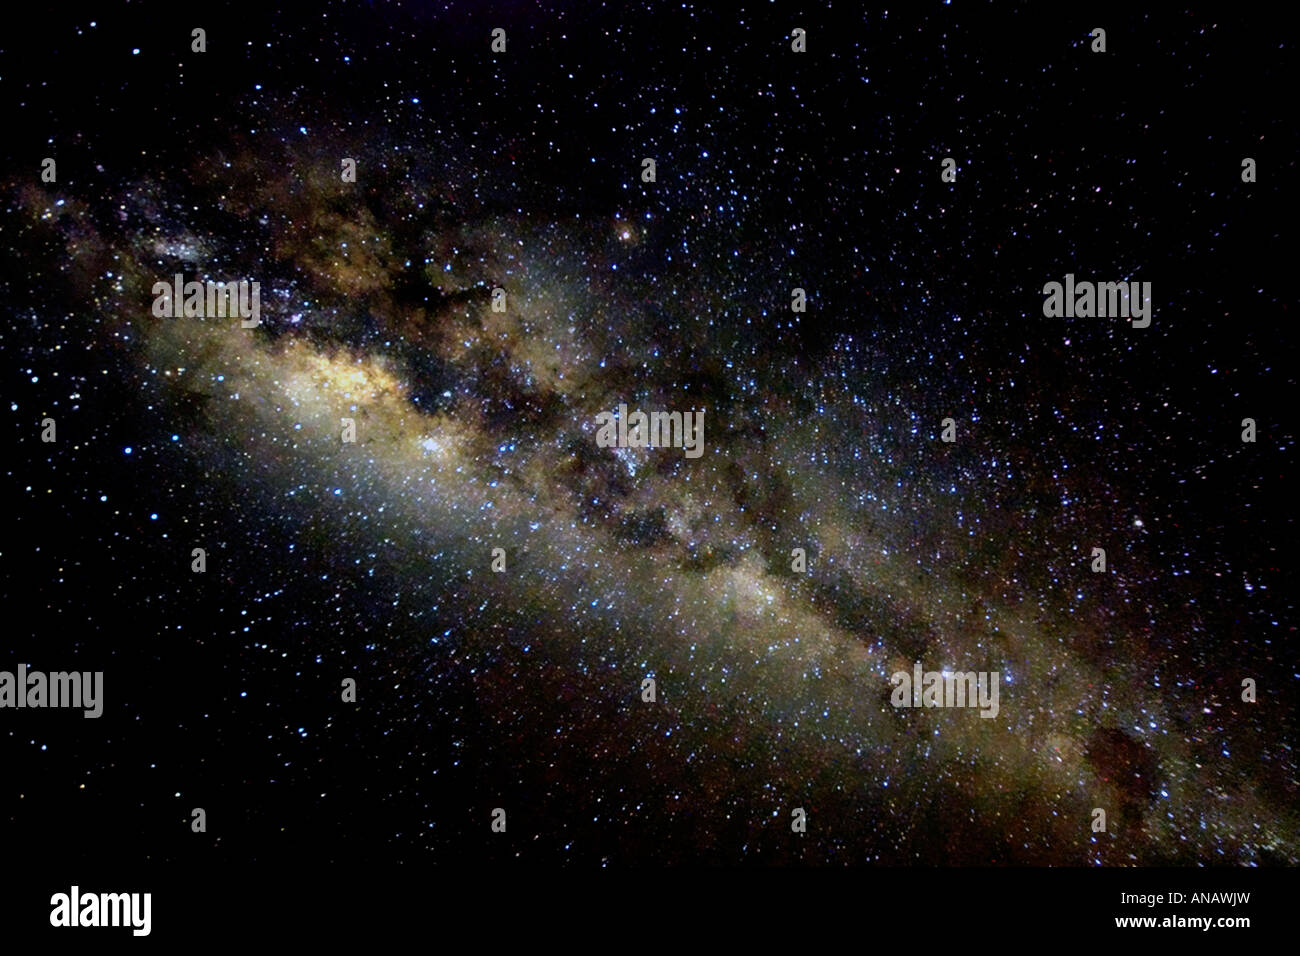 Our own galaxy the Milky Way, Tanzania, Lake Natron Stock Photo